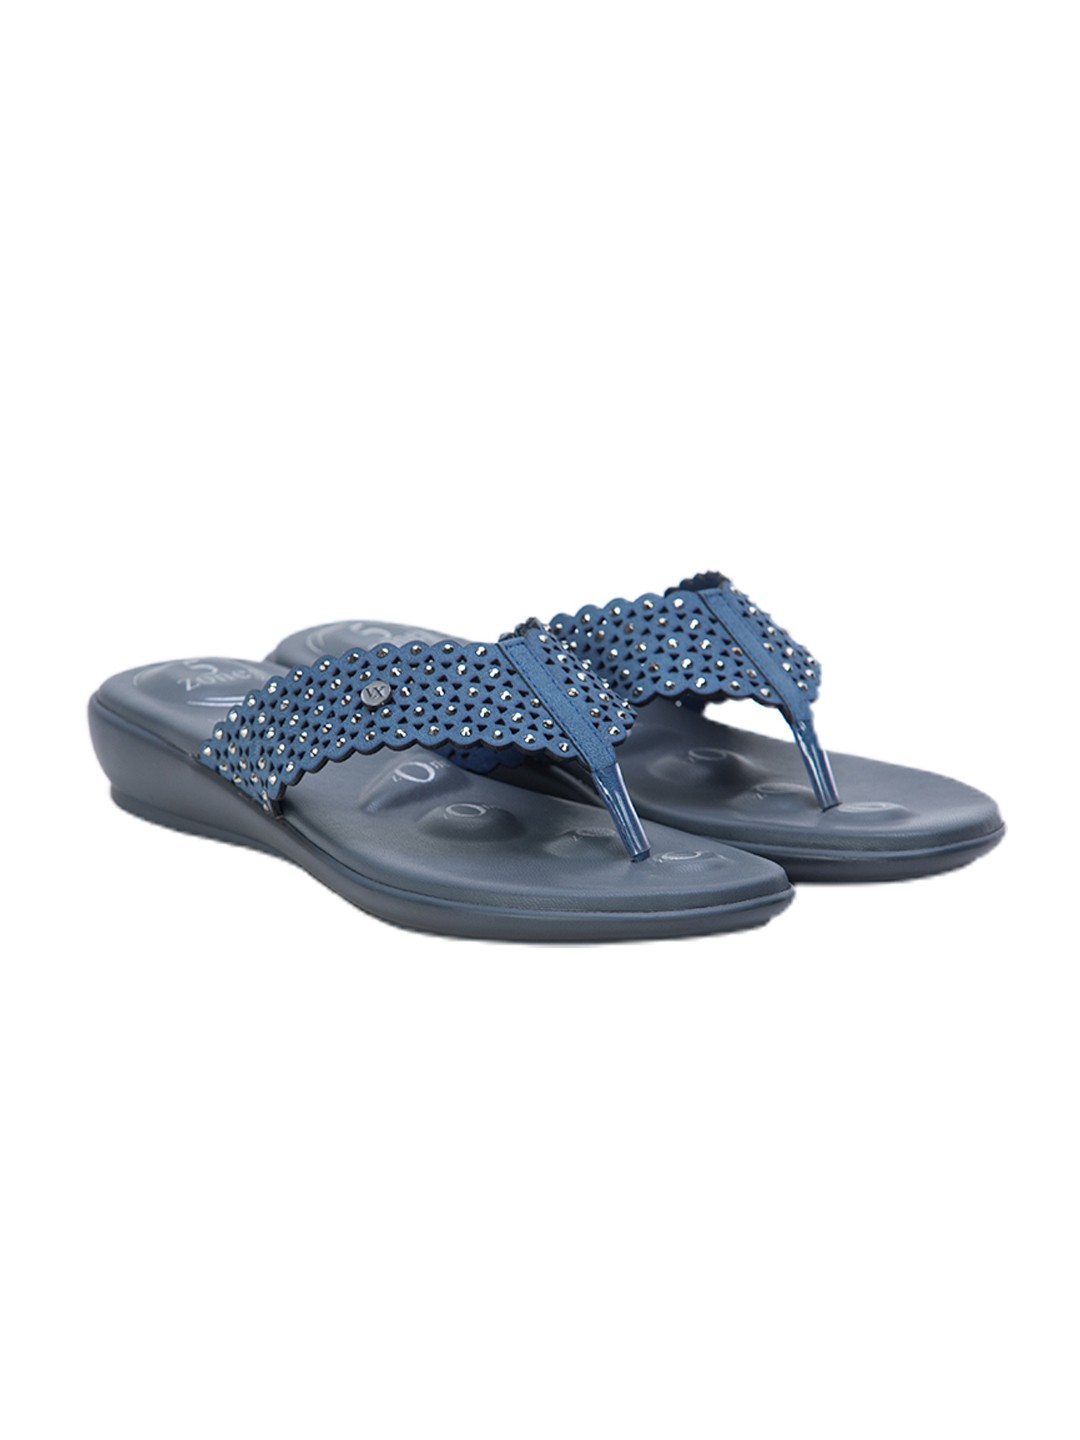 Buy Von Wellx Germany Comfort Gleam Blue Slippers Online in Dubai